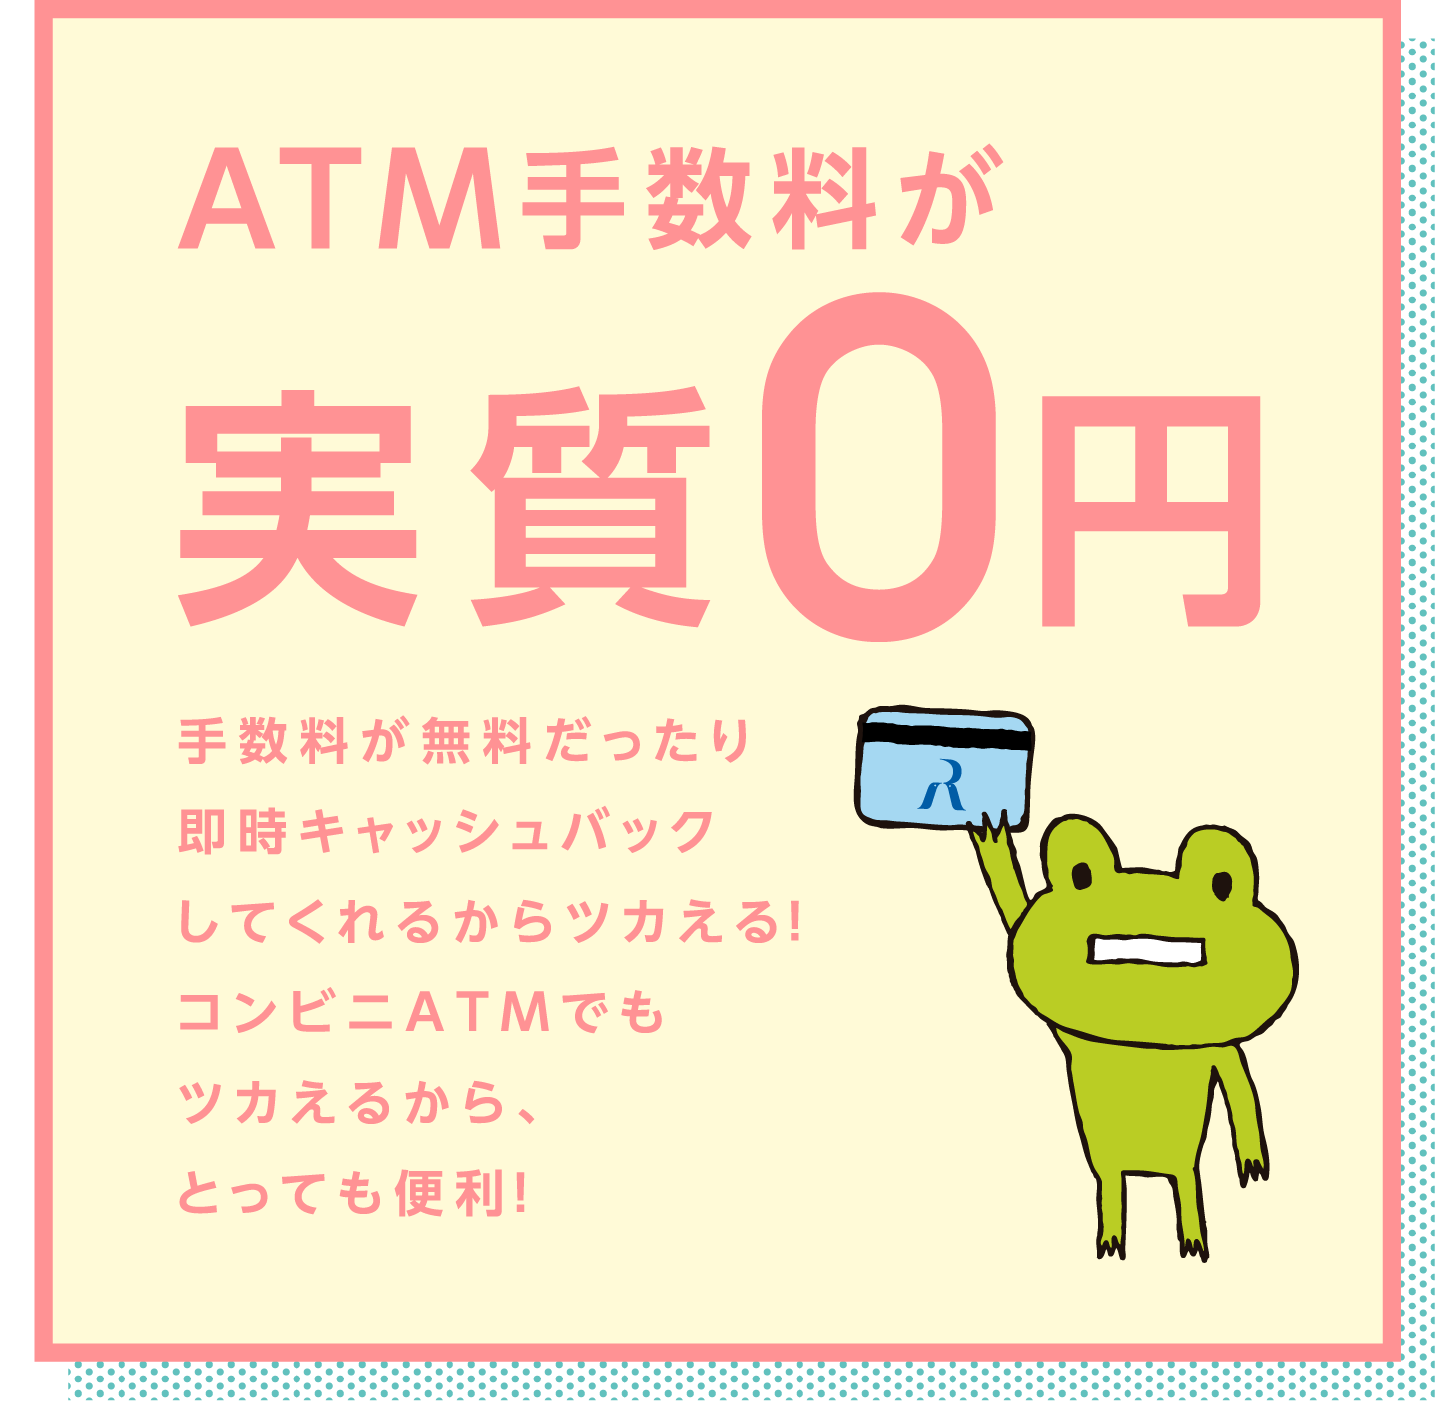 ATM手数料が実質0円